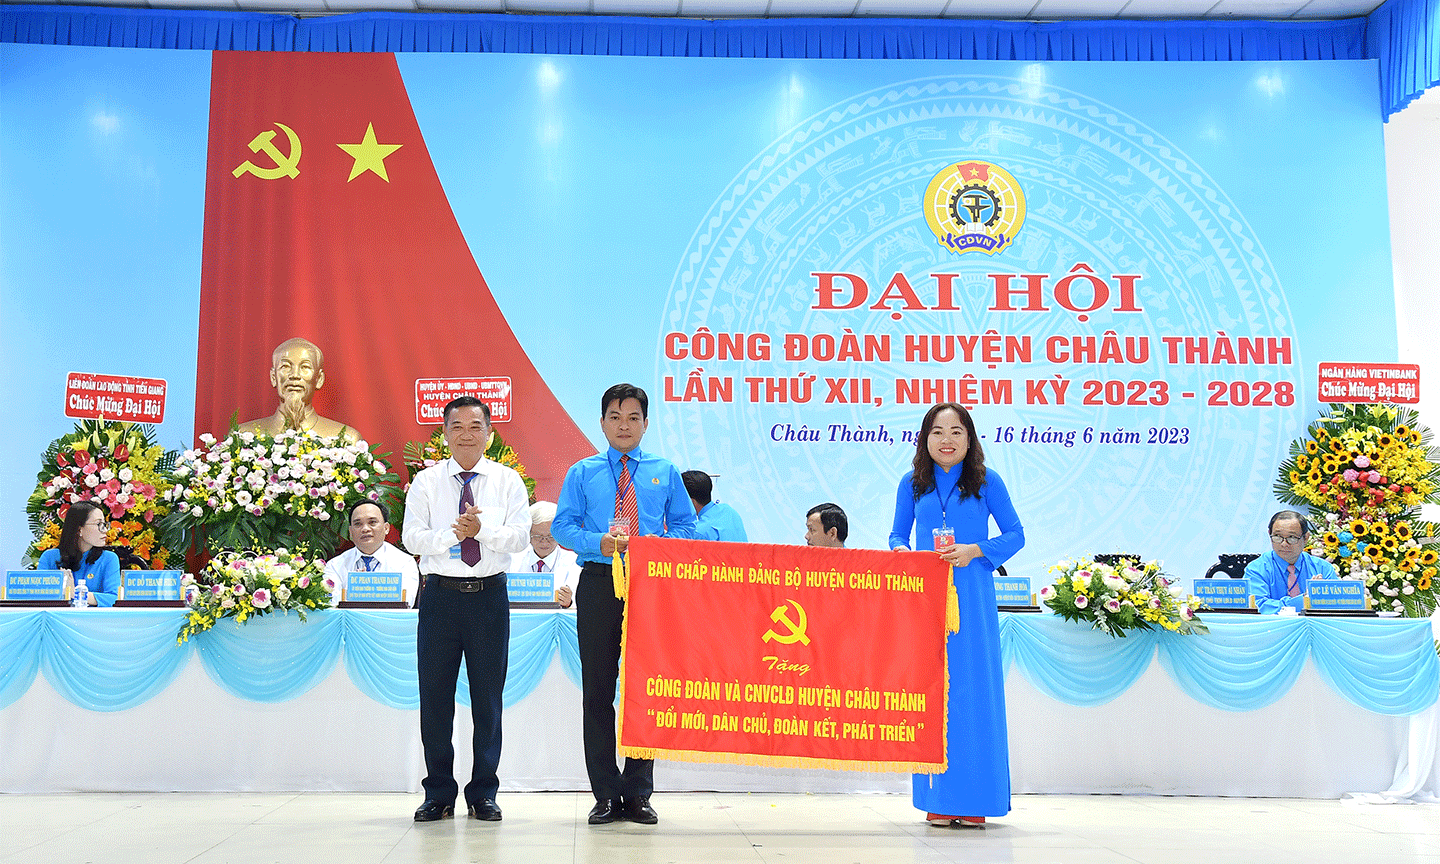 Đảng bộ huyện Châu Thành tặng bức trướng với nội dung “Đổi mới, dân chủ, đoàn kết, phát triển” cho công nhân, viên chức và người lao động huyện